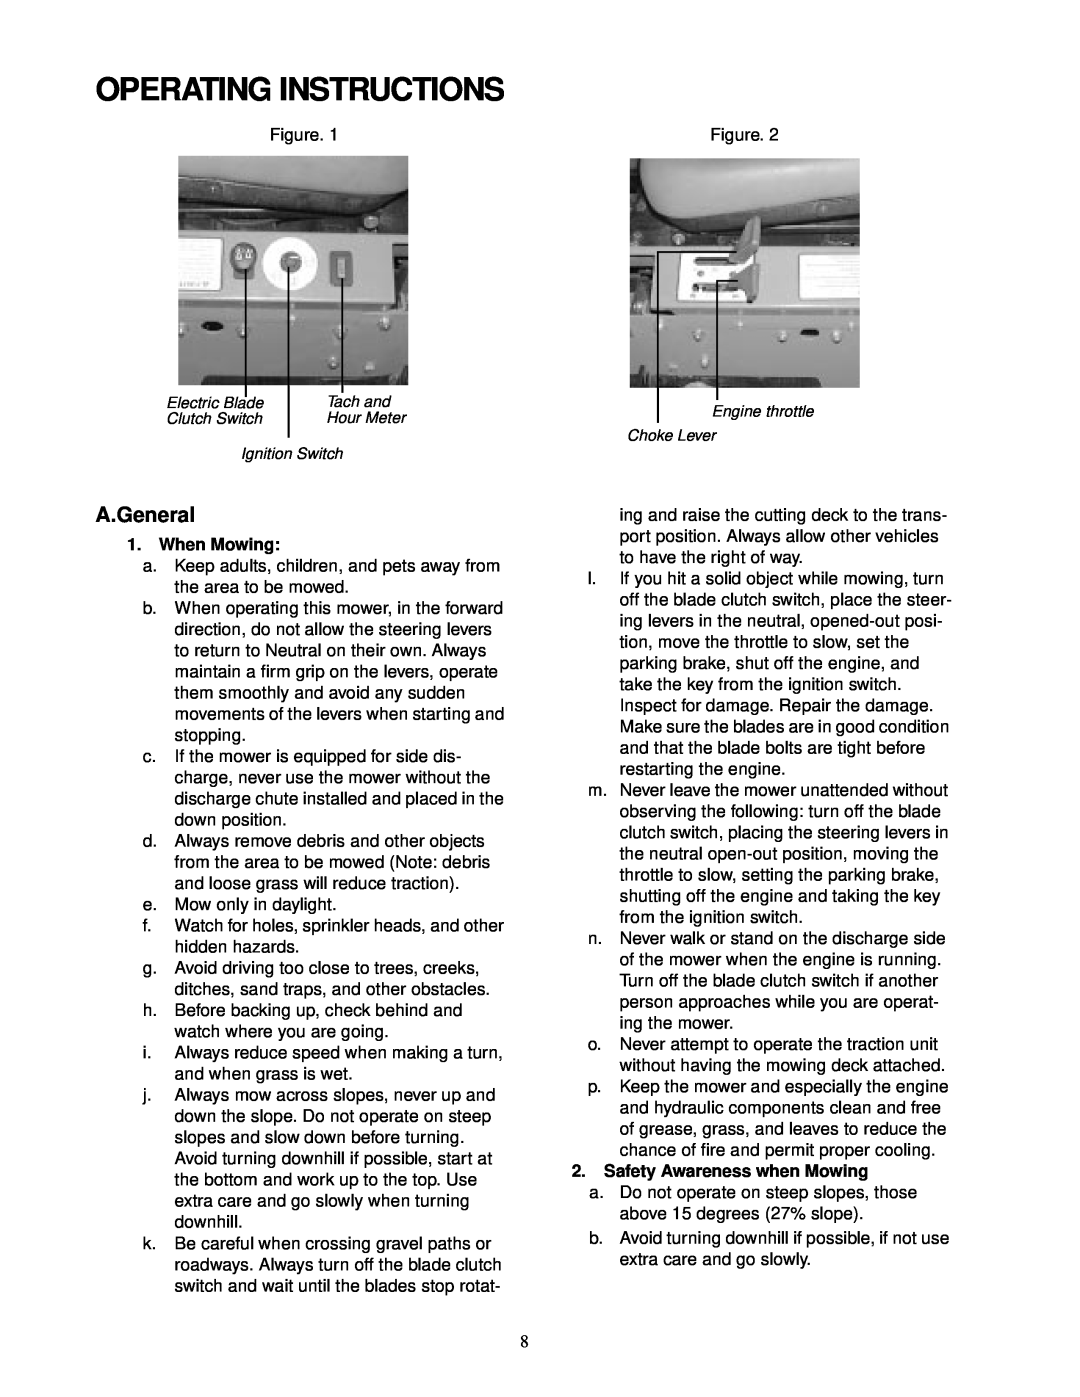 Cub Cadet service manual Operating Instructions, A.General 